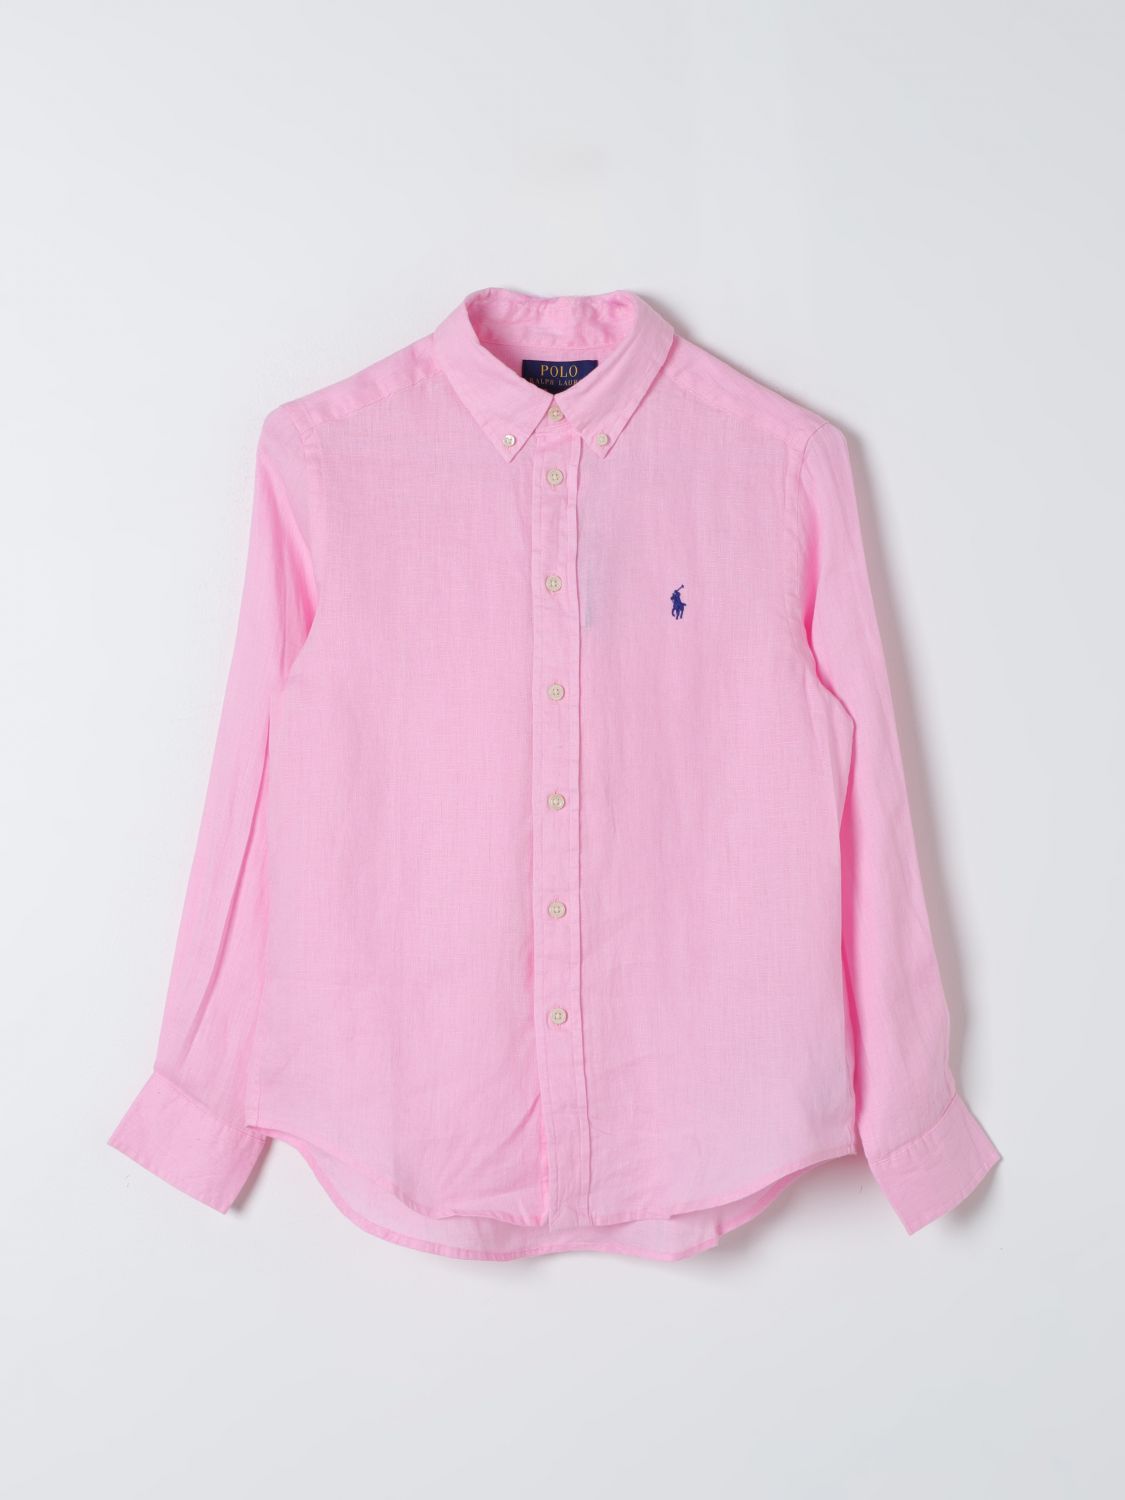 Polo Ralph Lauren Shirt  Kids Color Pink